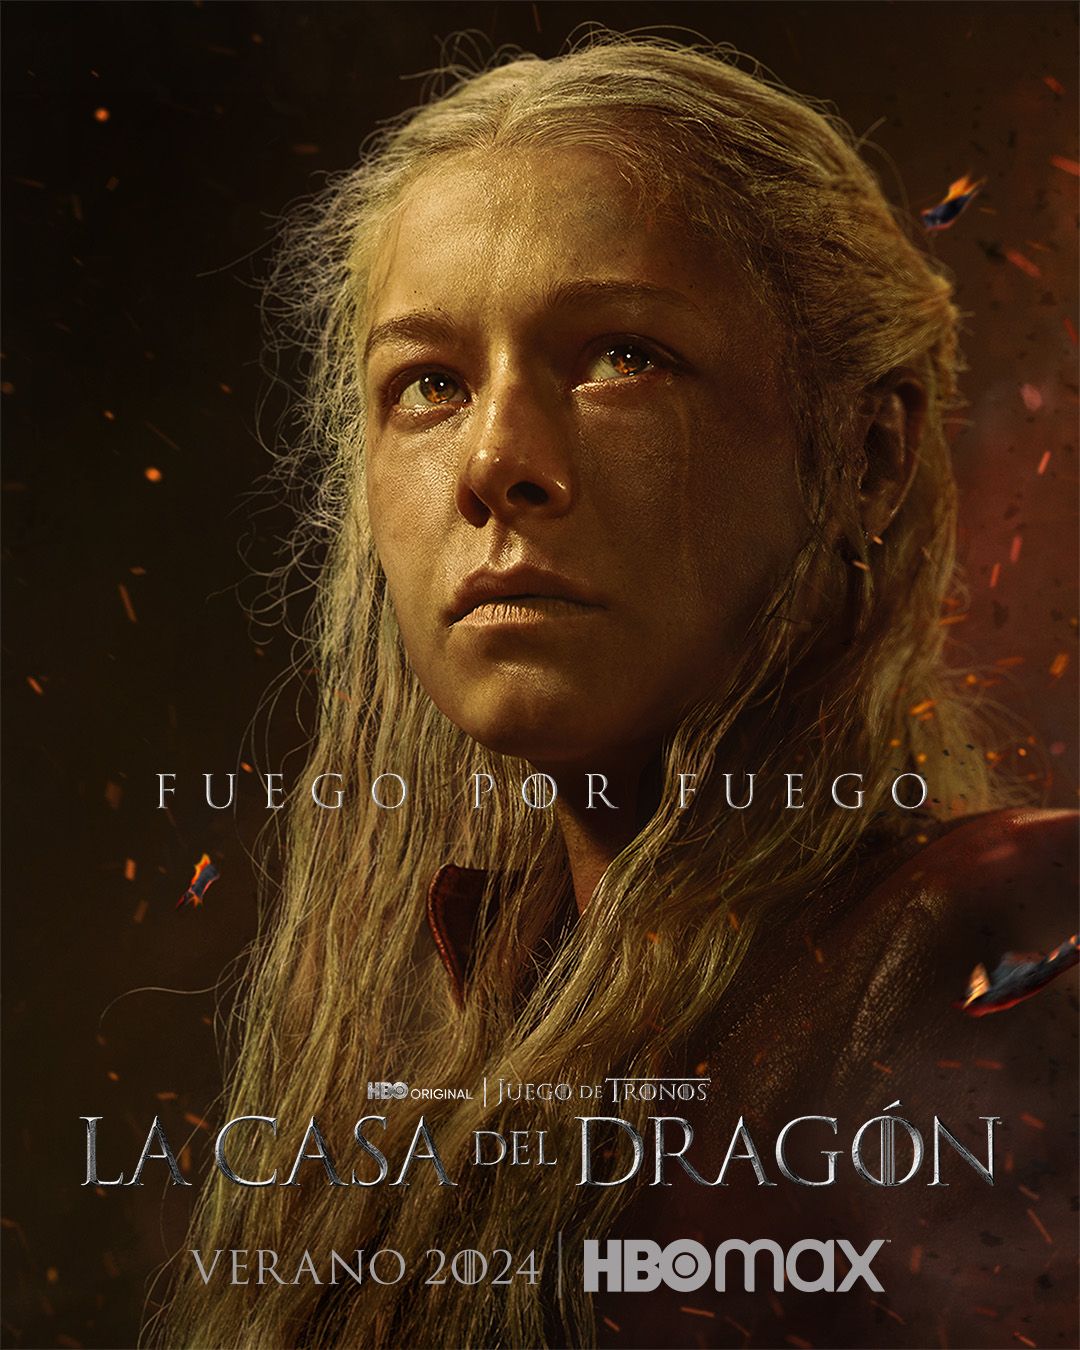 La casa del dragón, Temporada 2: tráiler, fecha de estreno